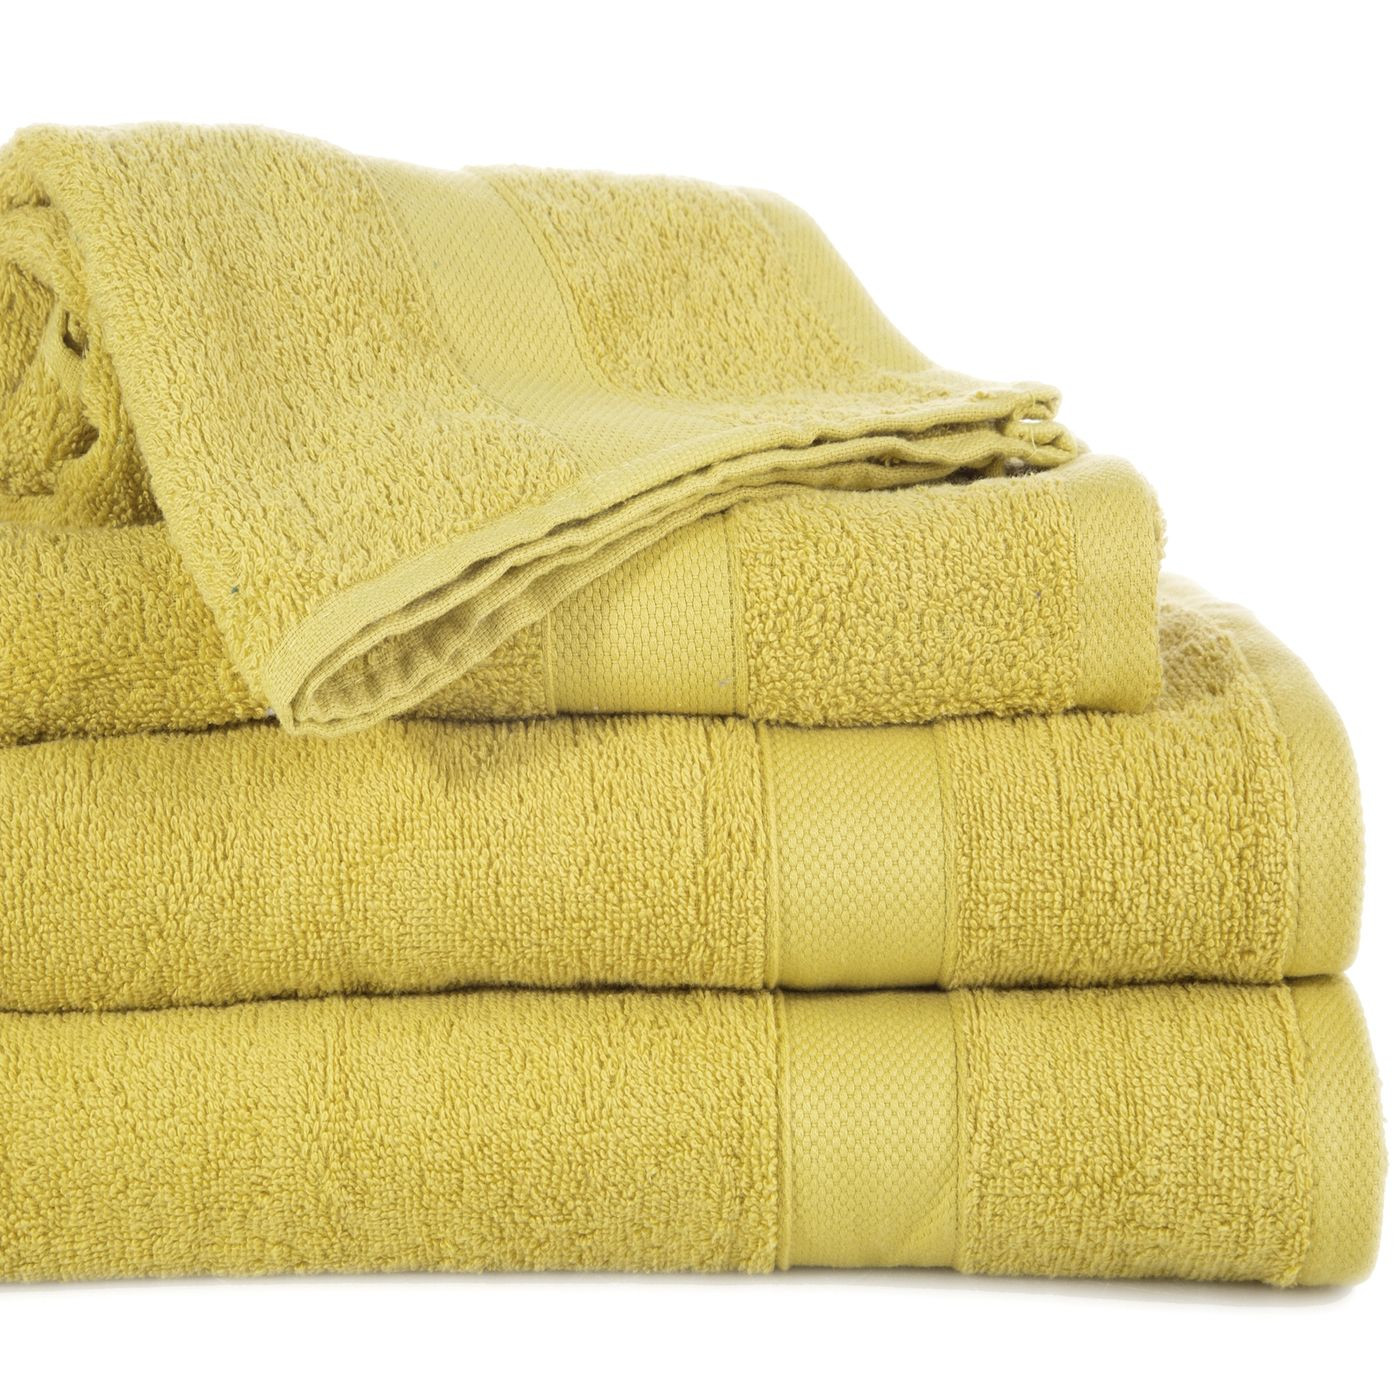 Miękki chłonny ręcznik kąpielowy musztardowy 70x140